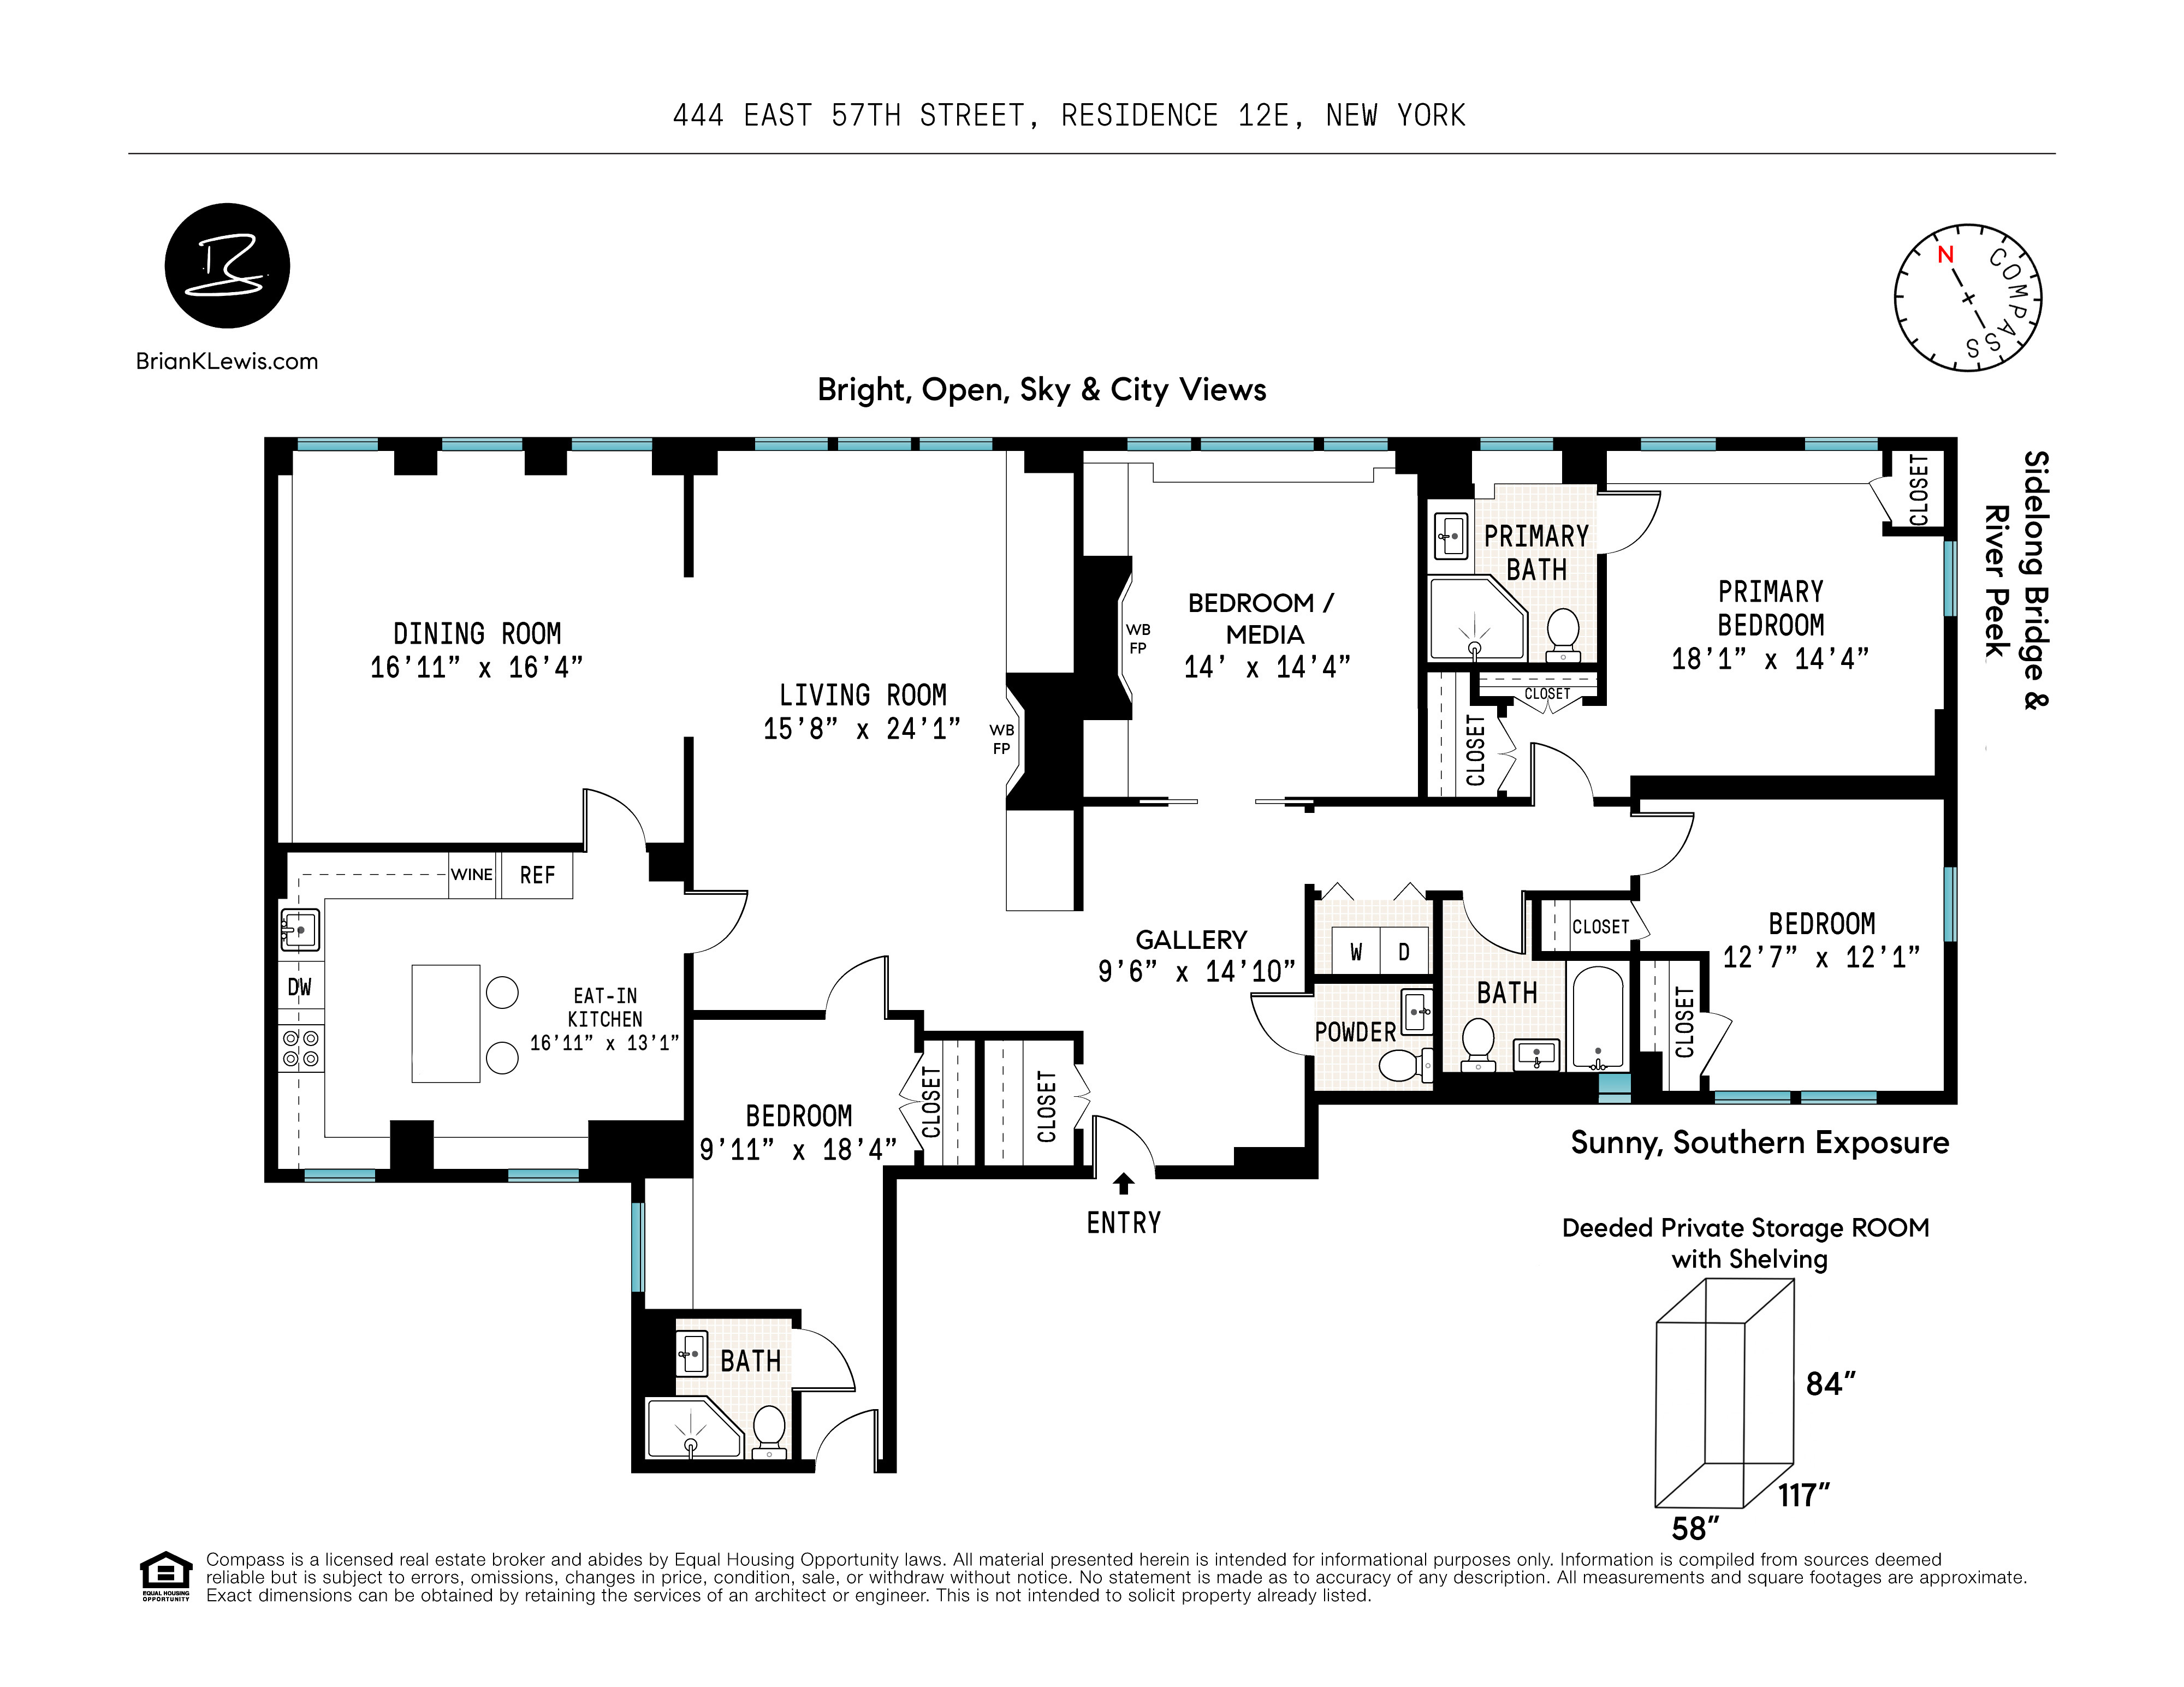 Floorplan for 444 East 57th Street, 12E